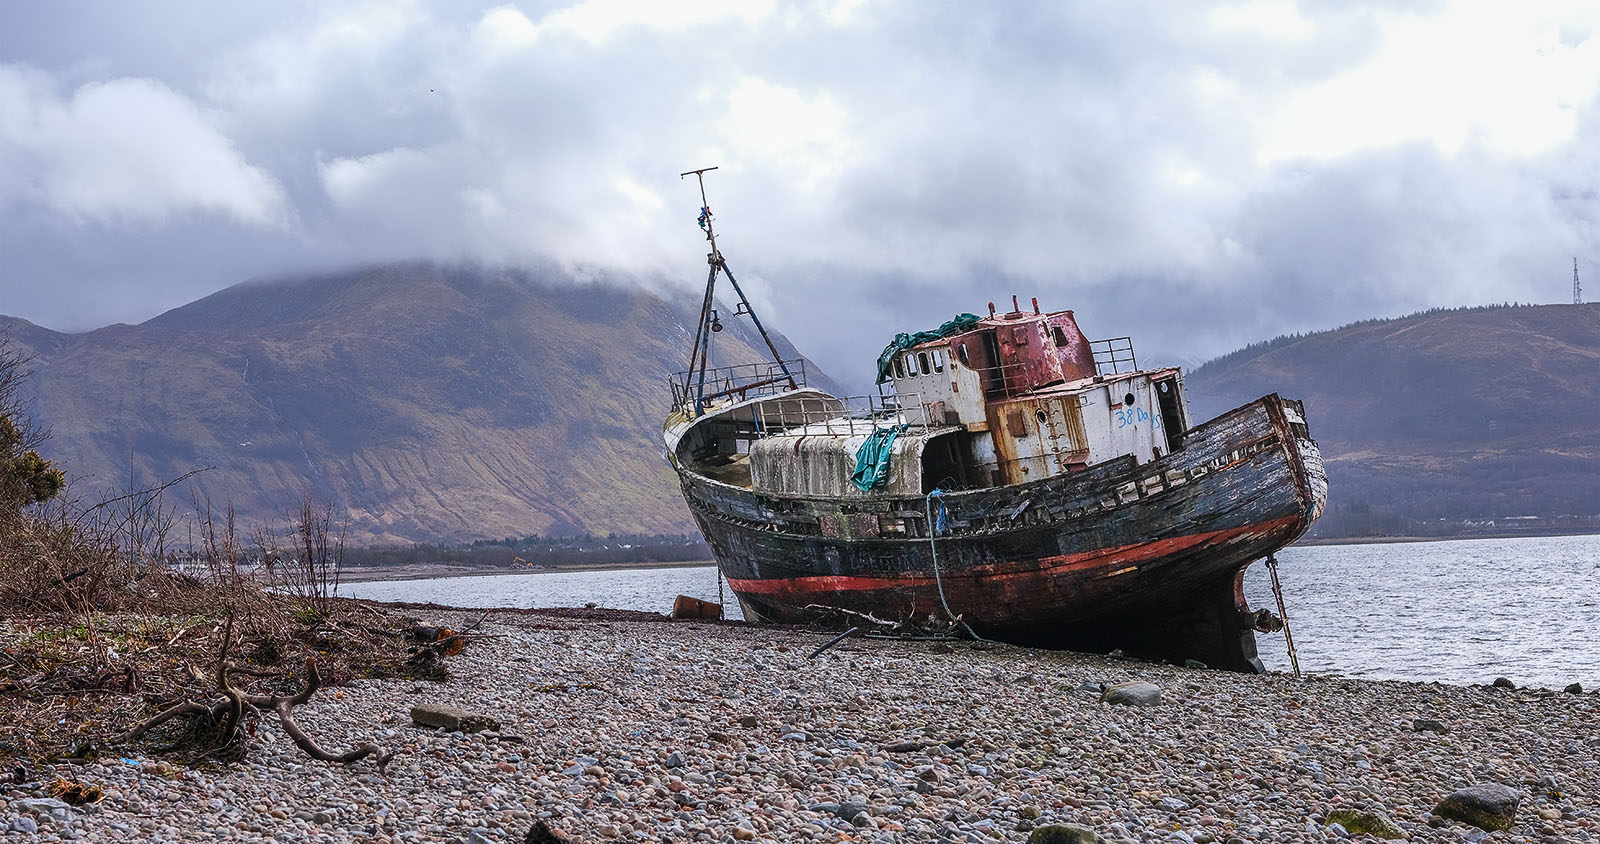 Derelict Fishing Boat  by Jon Allanson